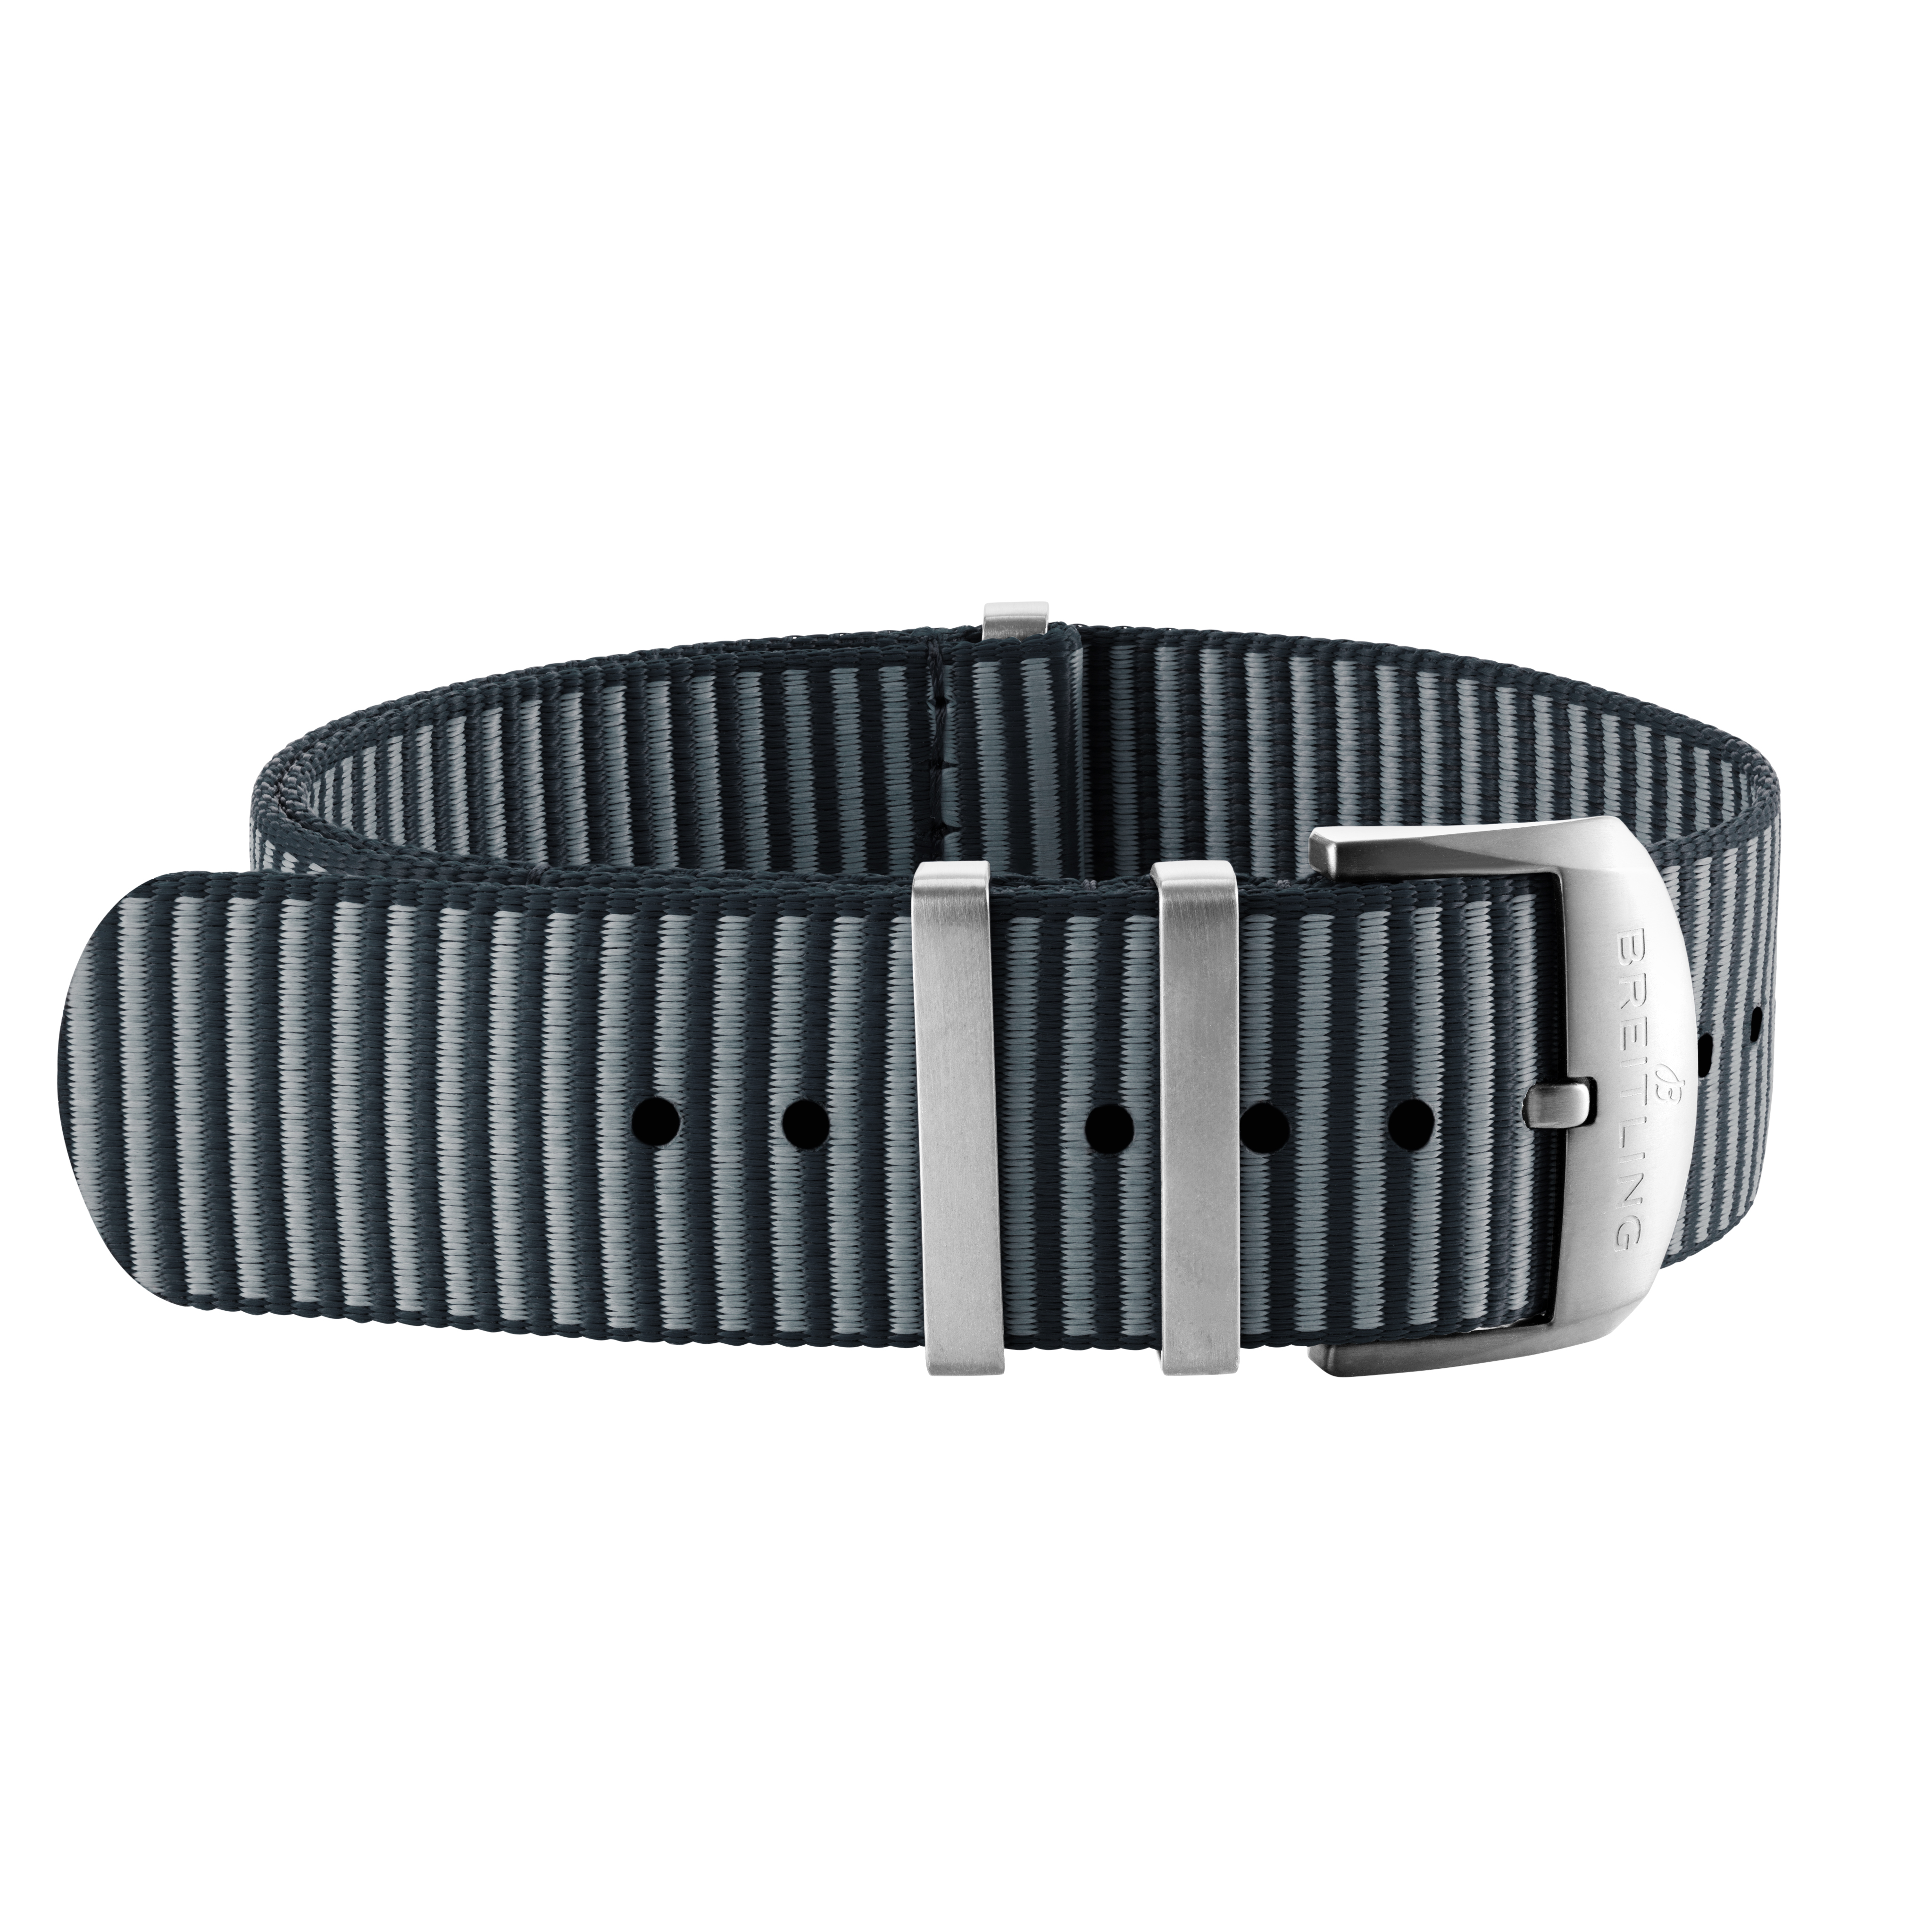 Bracelet une pièce Outerknown en fil ECONYL® gris (avec passants en acier inoxydable) - 20 mm